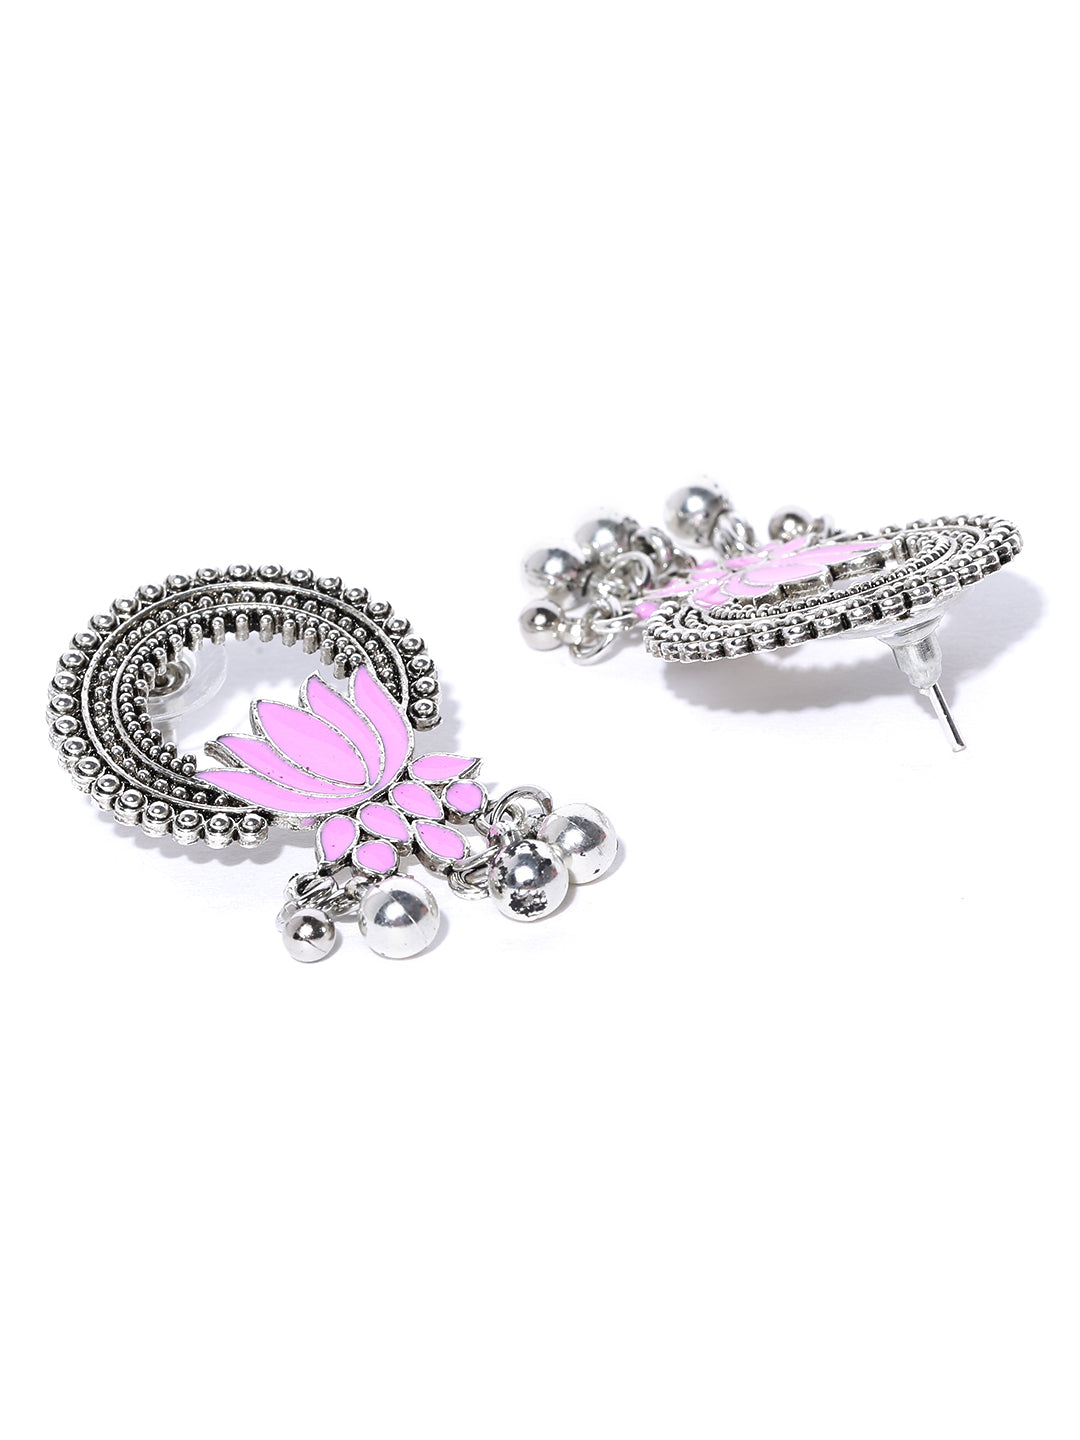 Oxidised Silver-Plated Lotus Inspired Meenakari Drop Earrings In Pink Color